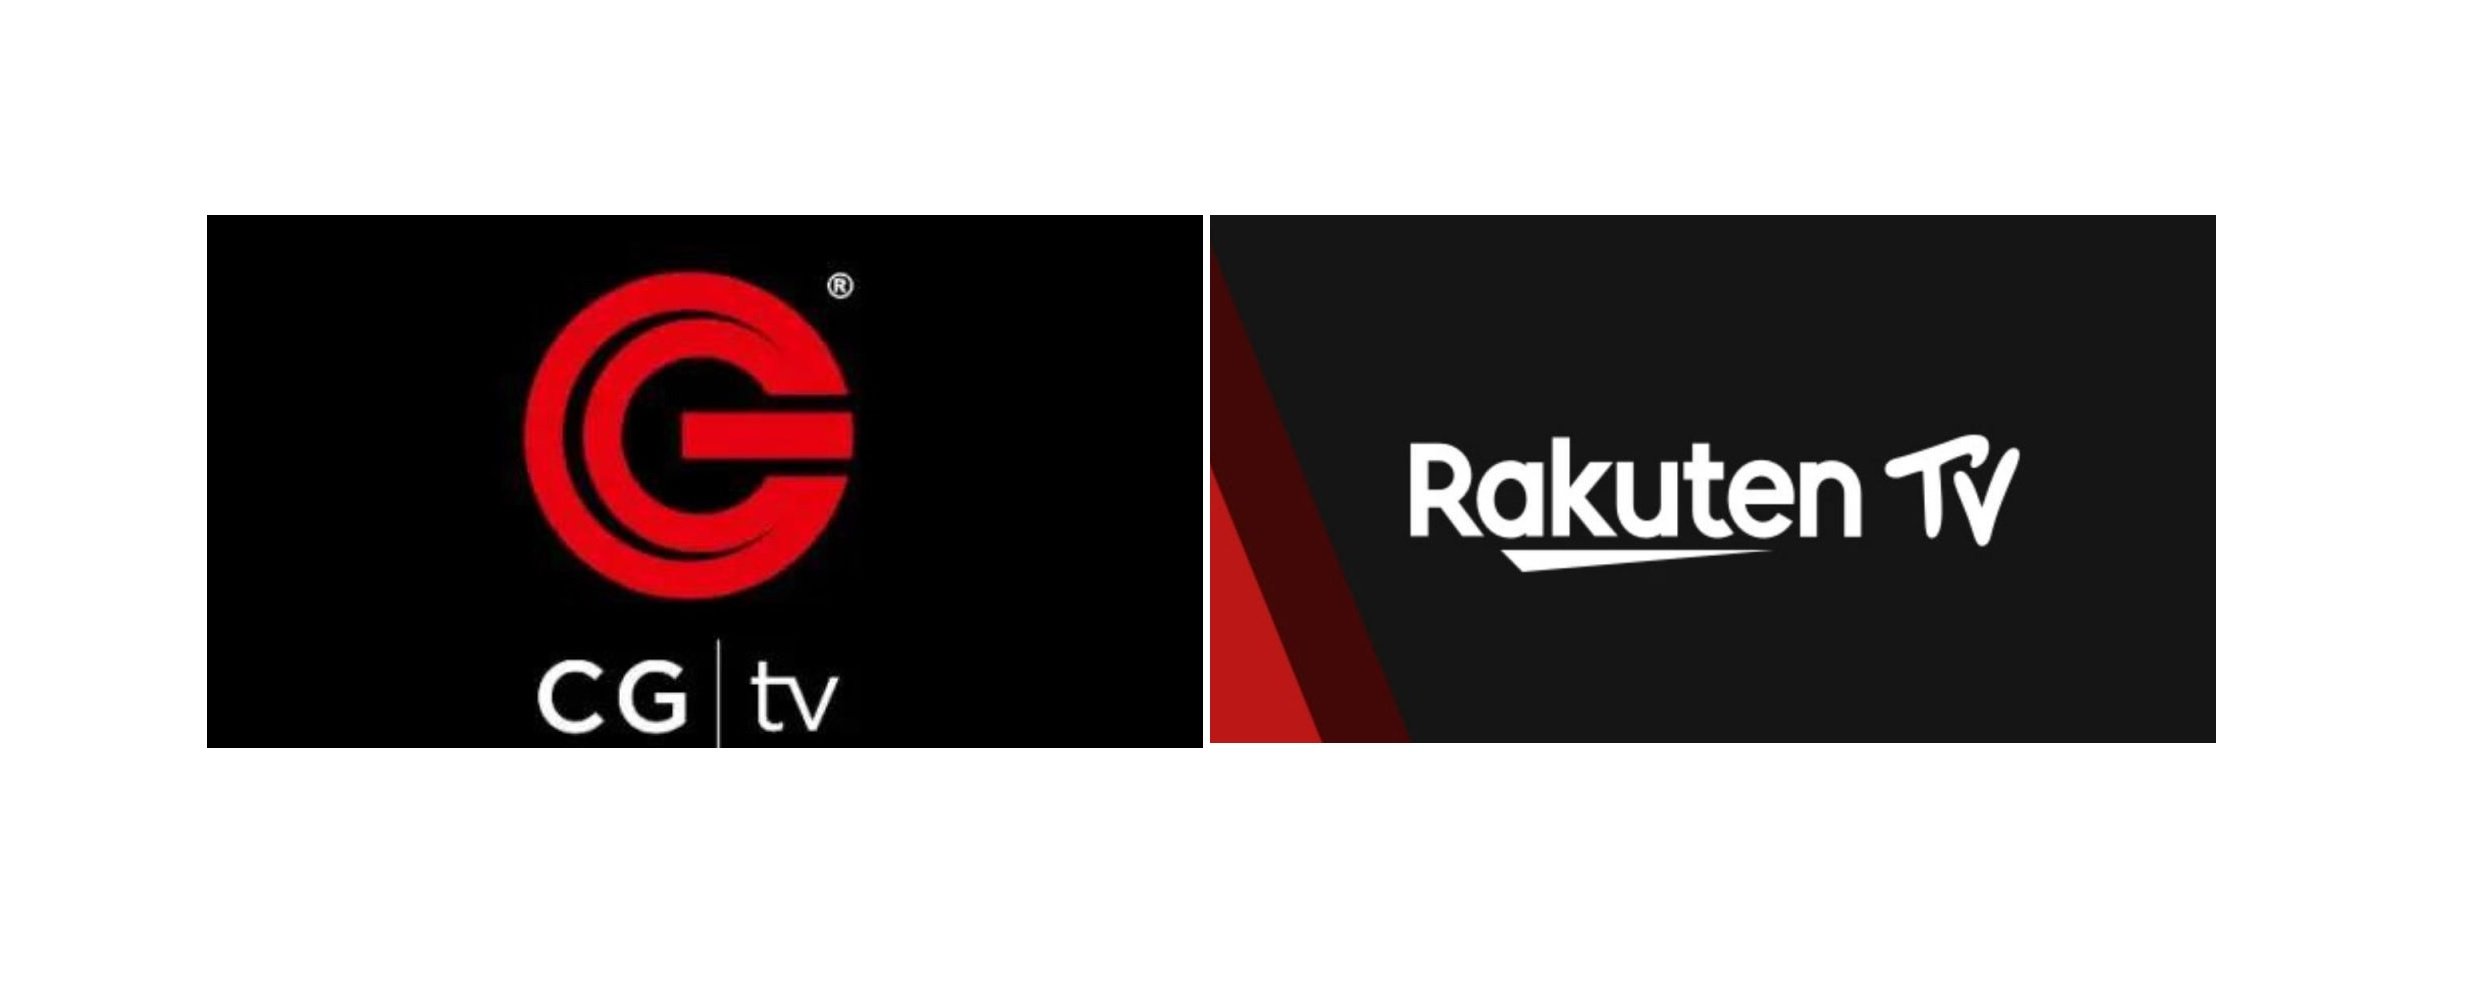 CG tv Rakuten TV